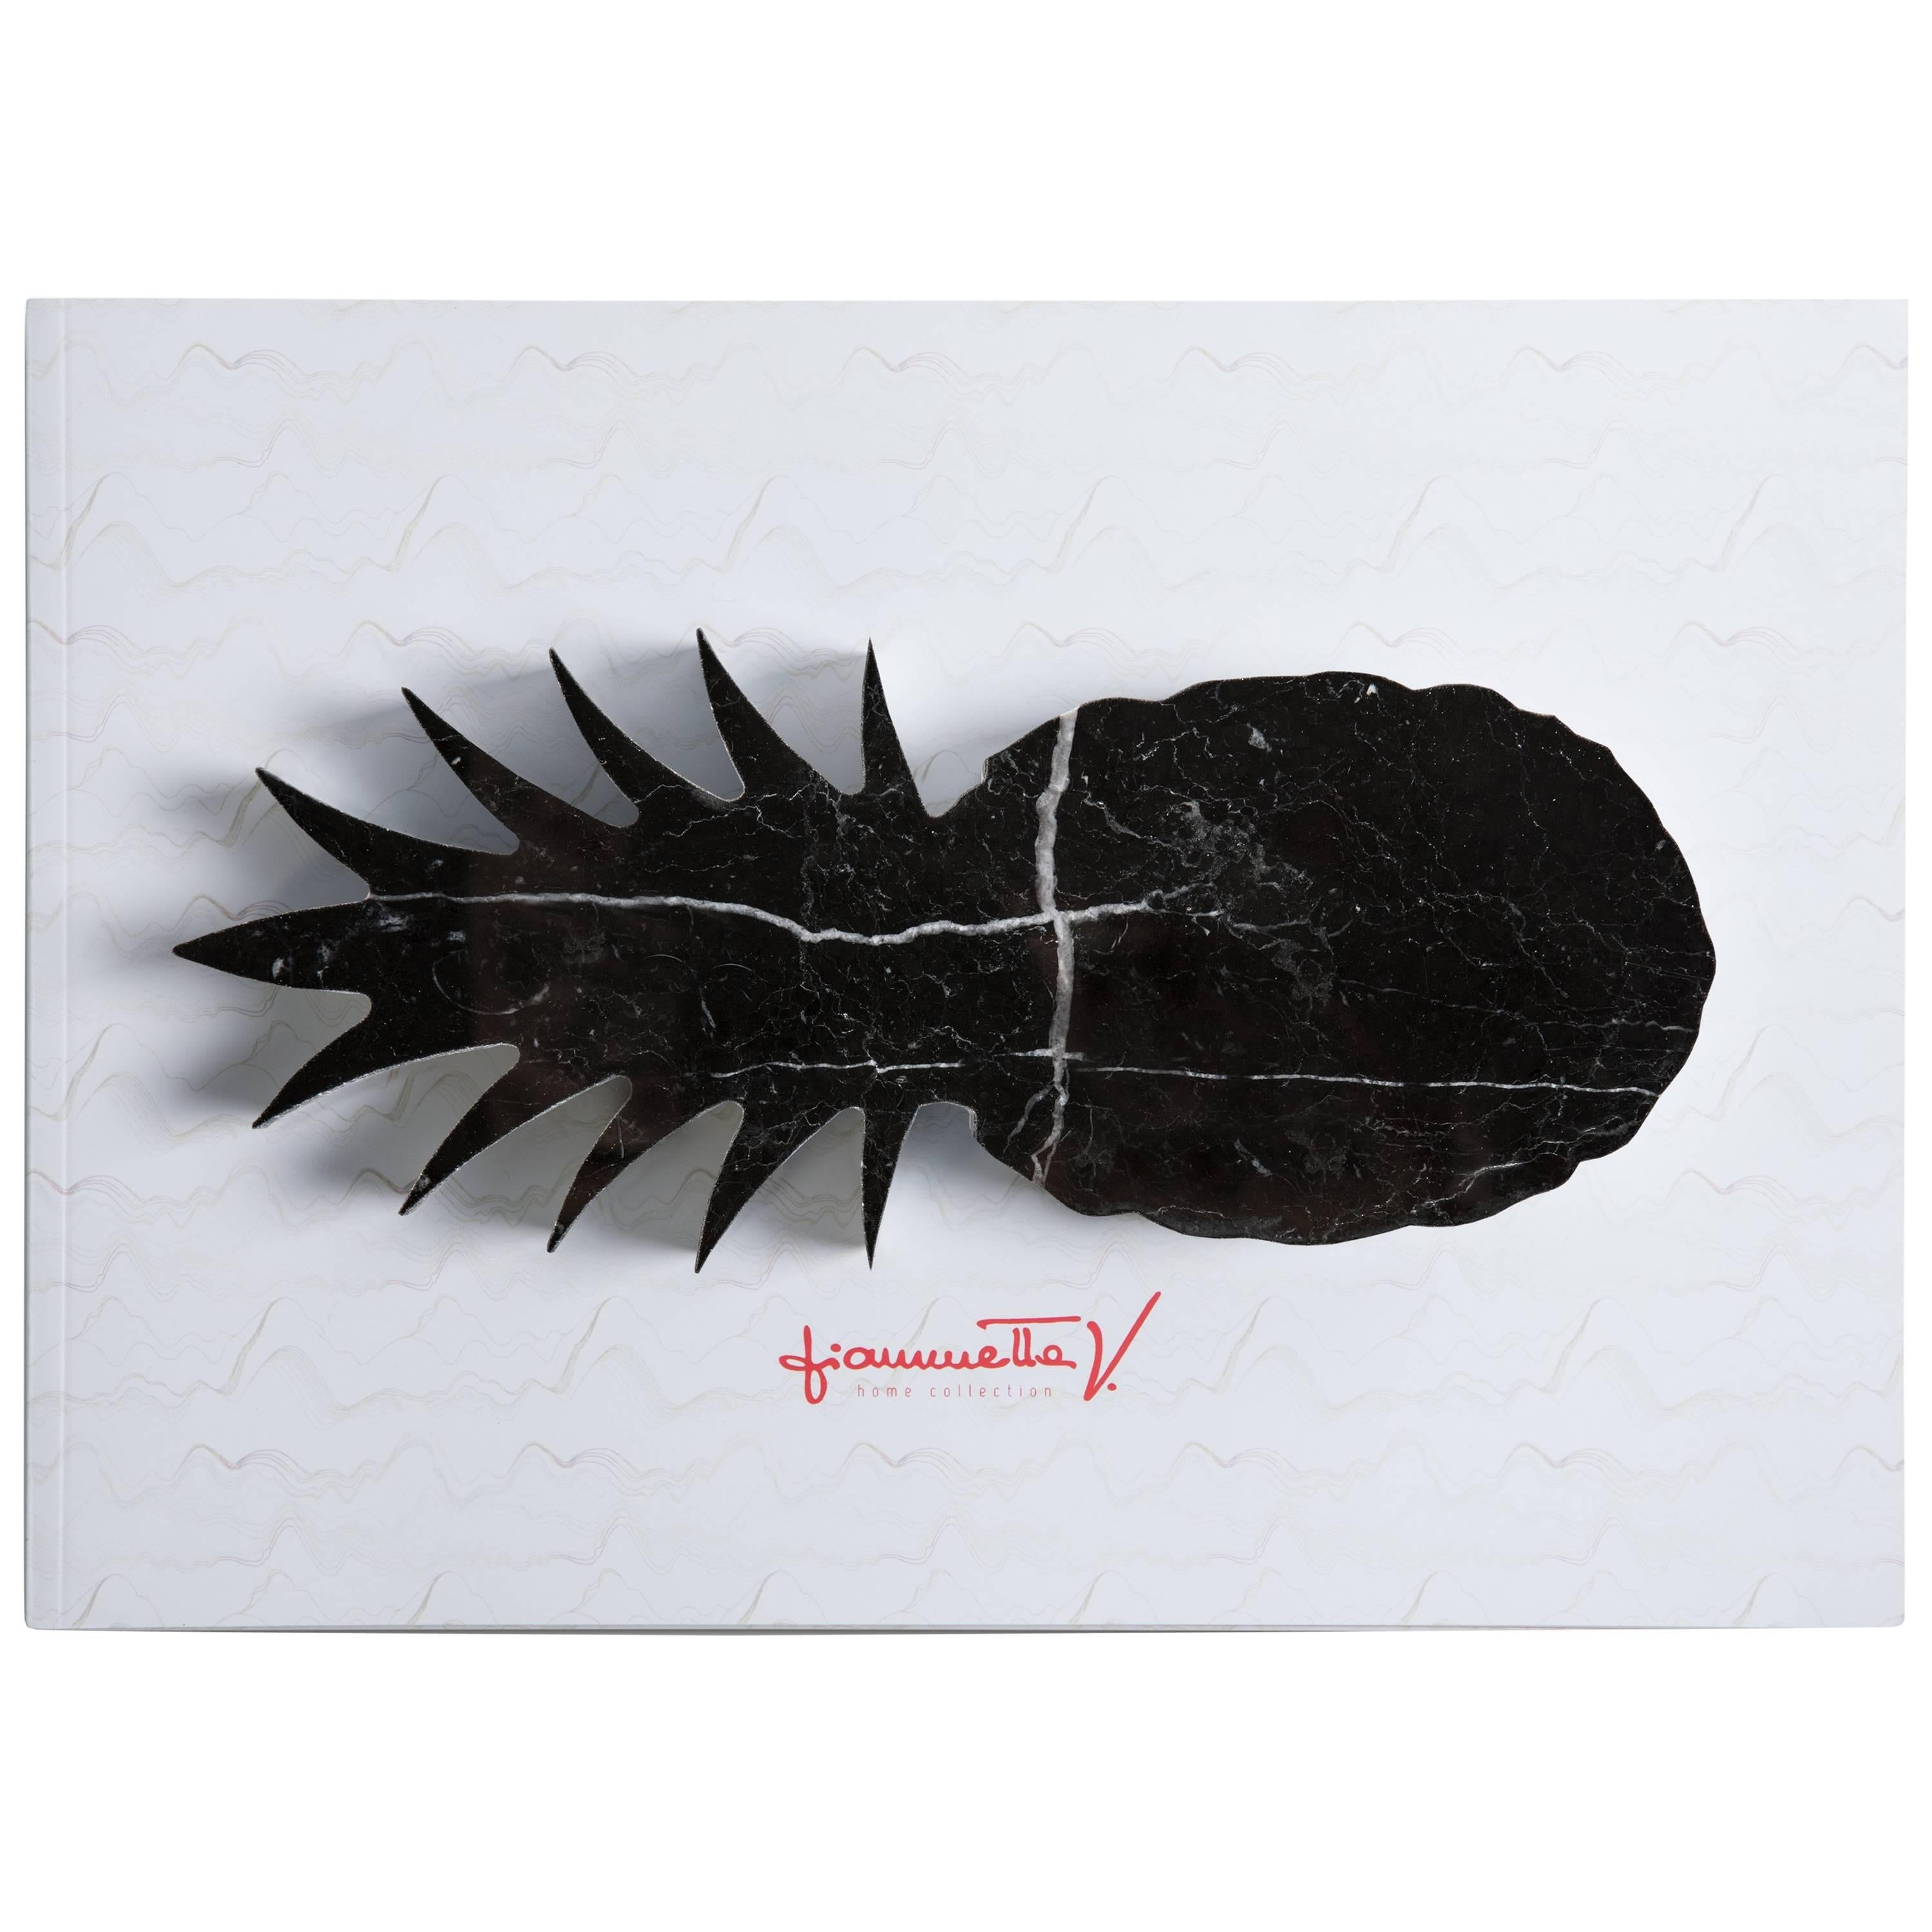 Handgefertigter Briefbeschwerer aus schwarzem Marquina-Marmor mit Ananasform, handgefertigt